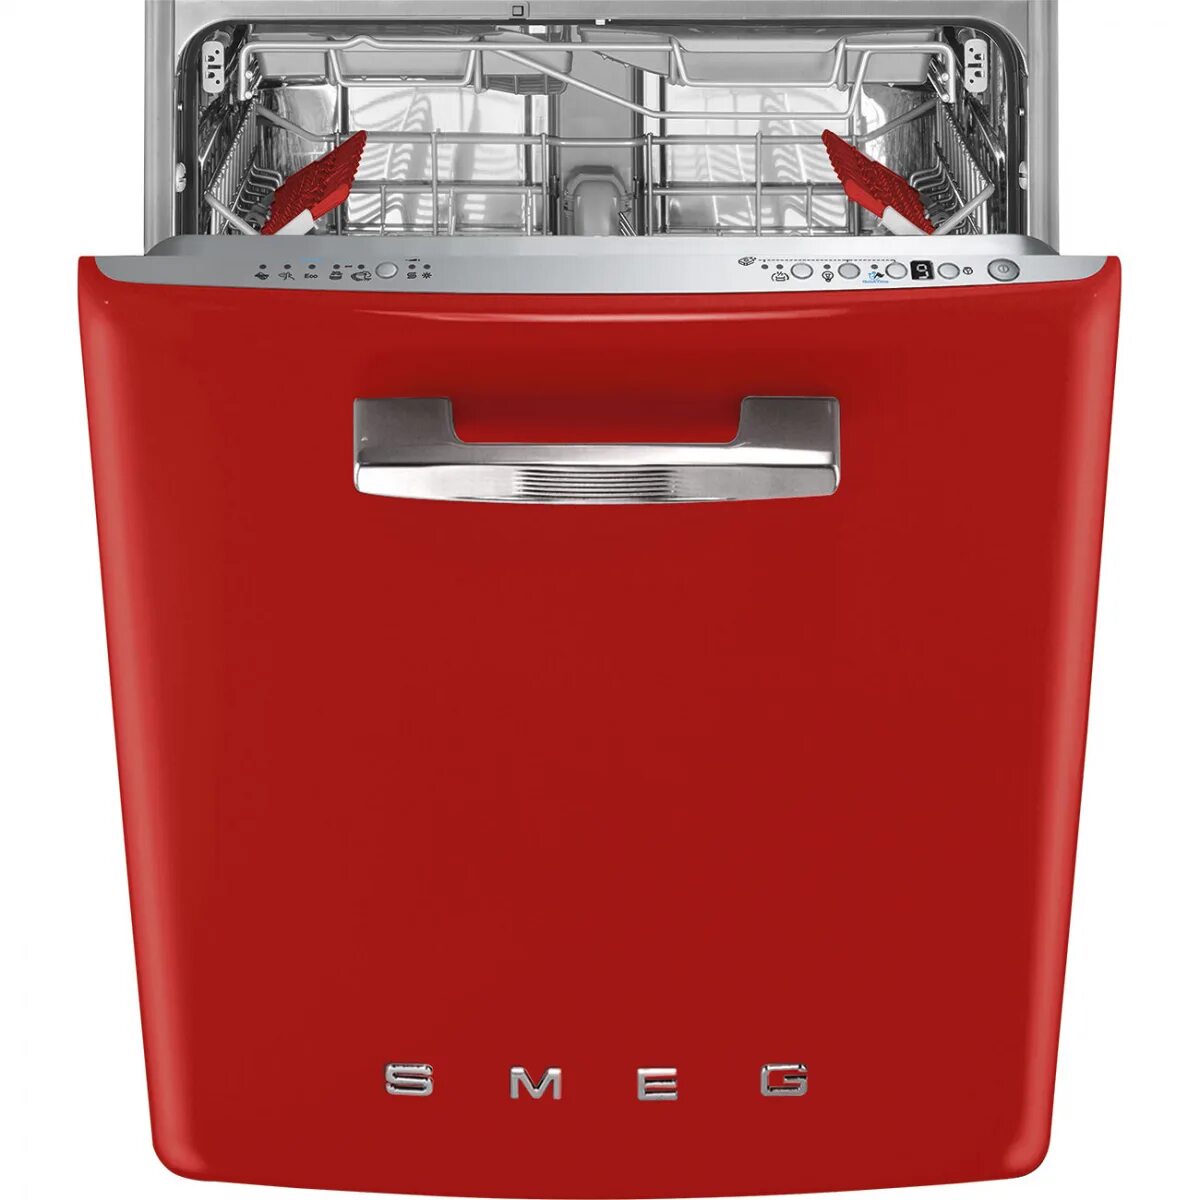 1 купить посудомоечную машину. Посудомоечная машина Smeg st2fabr2. Посудомоечная машина Smeg st2fabcr. Смег посудомоечная машина встраиваемая. Посудомоечная машина Смег 45 см встраиваемая.